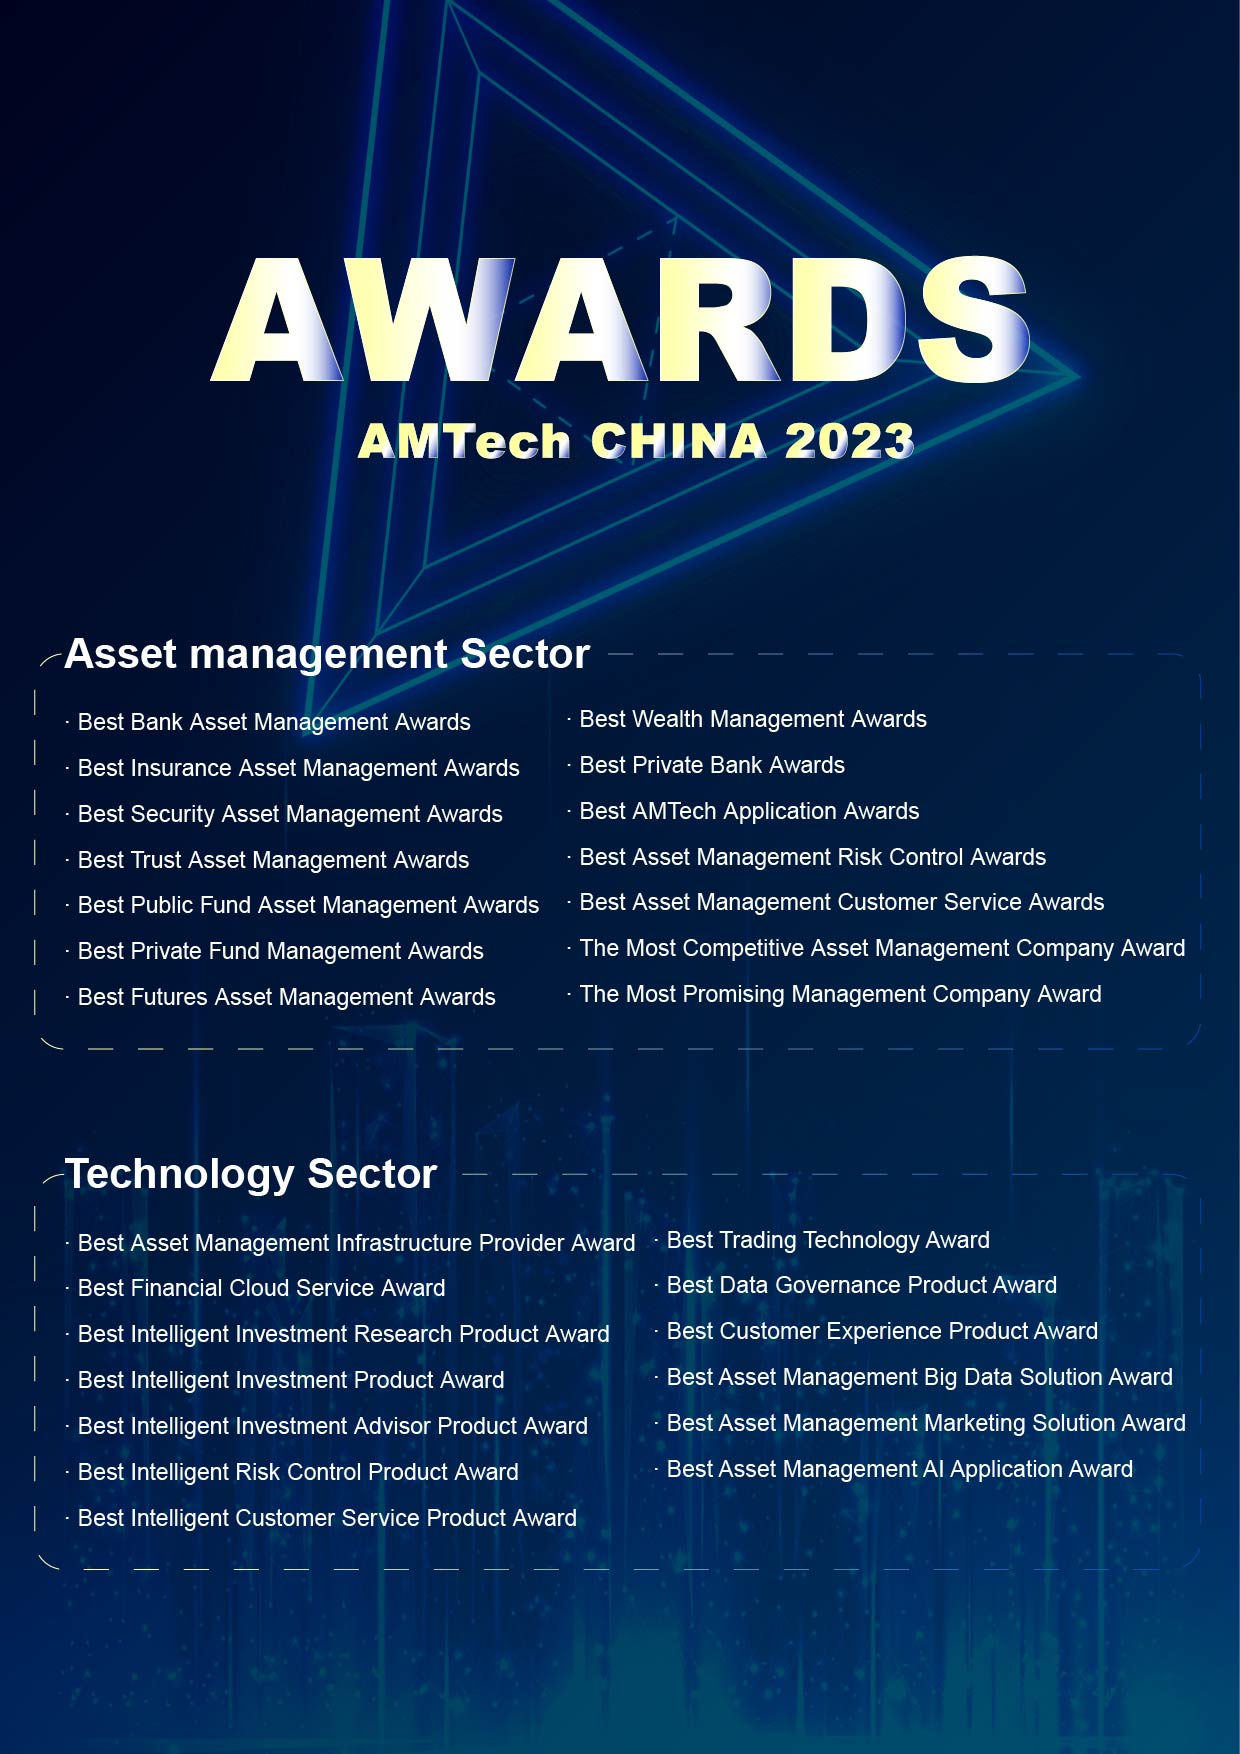 AM Tech CHINA 2023